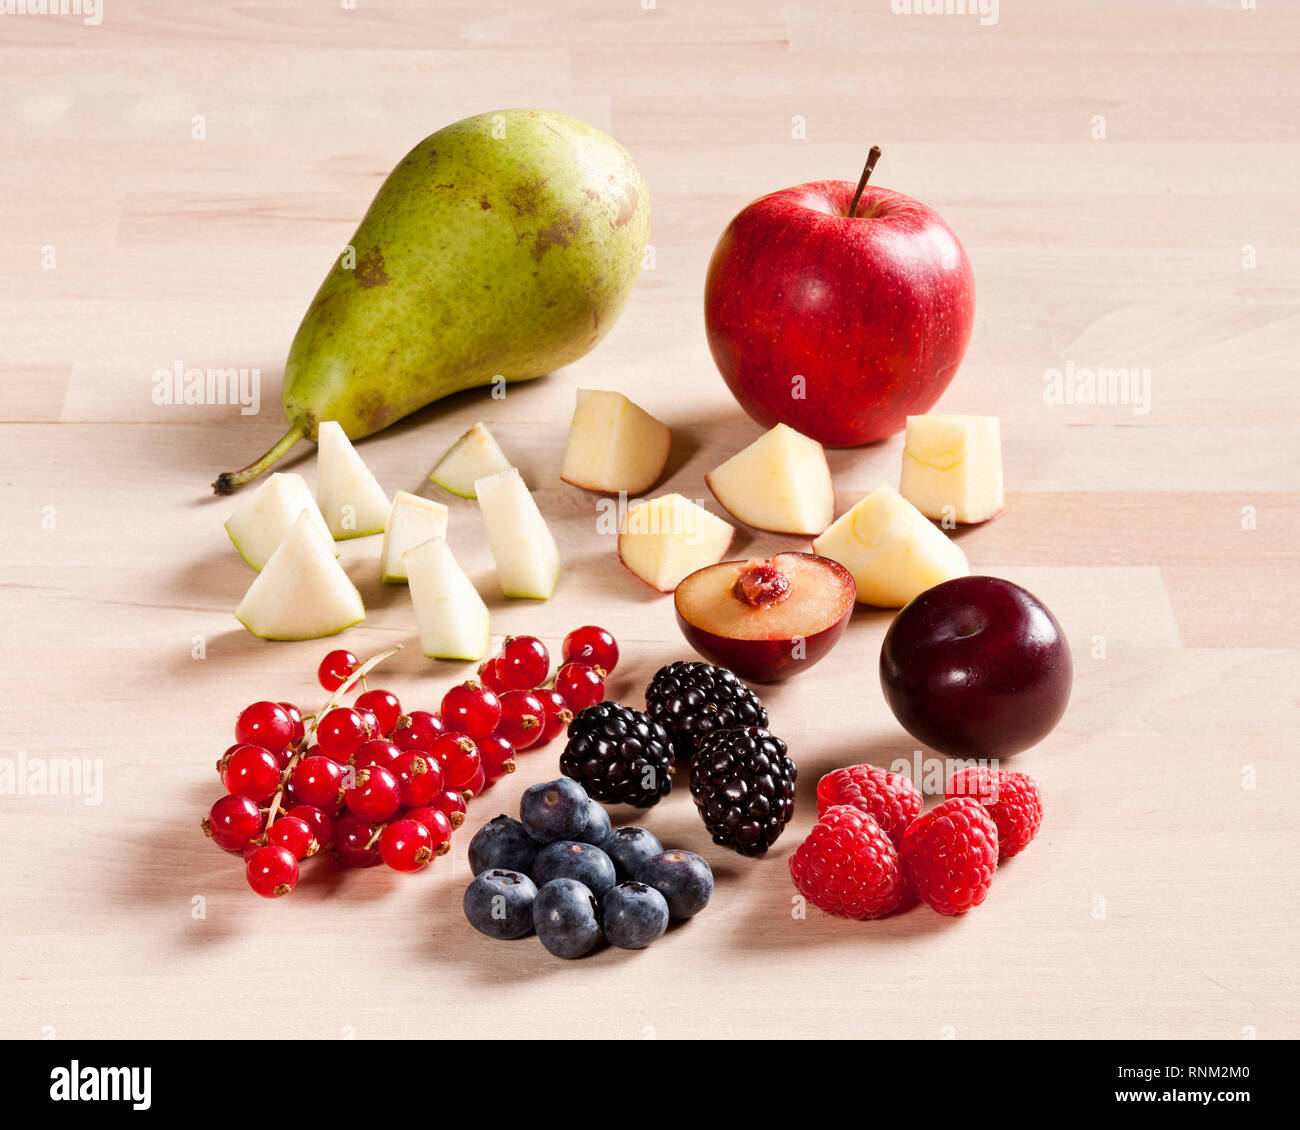 Diferentes frutas: fresas, frambuesas, moras, arándanos, manzana, ciruela y pera. Studio picture. Gremany. Foto de stock